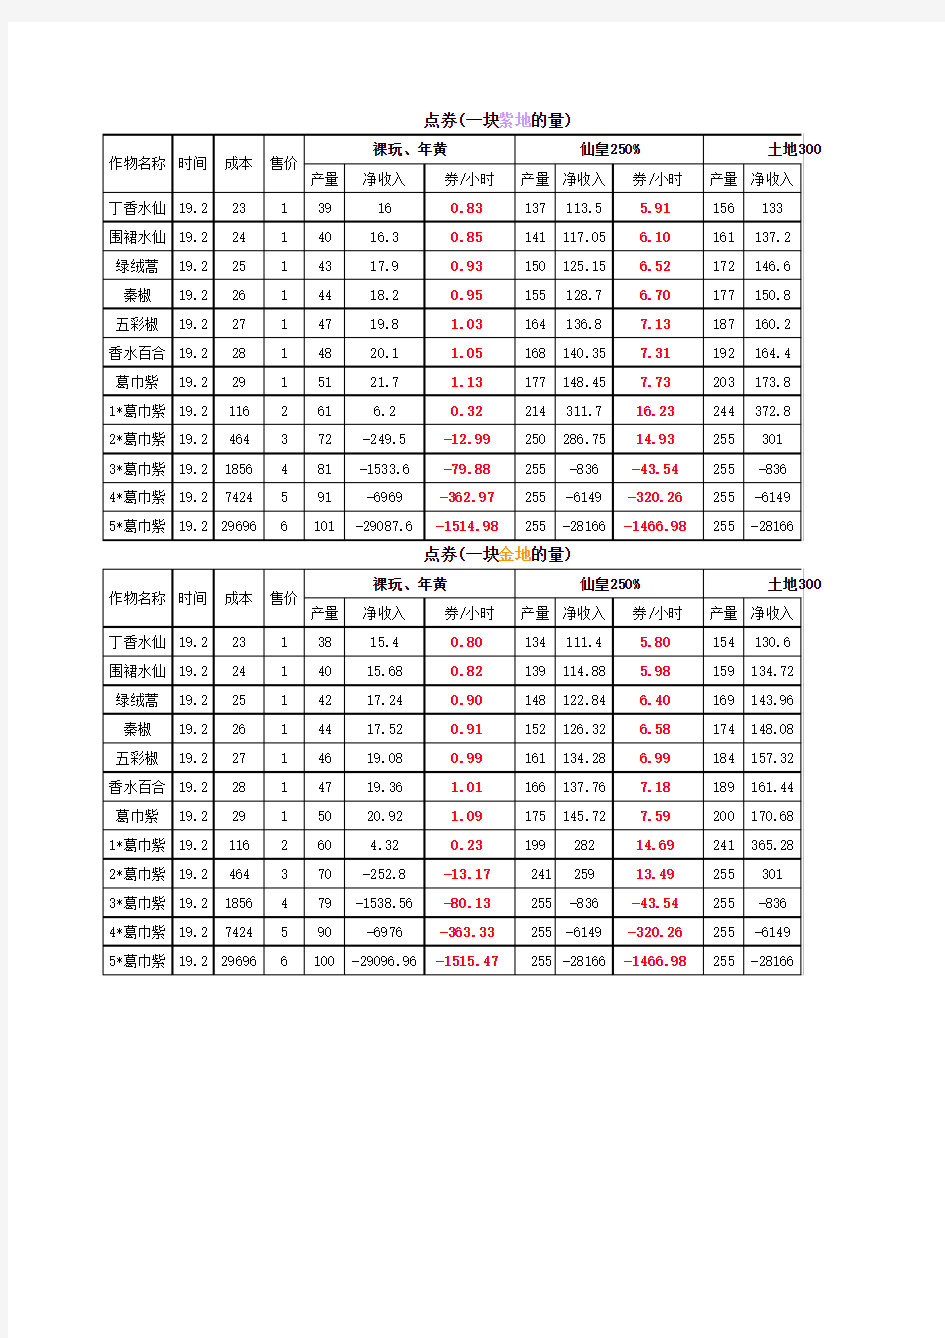 QQ农场2.0点券收益表(3月28日)